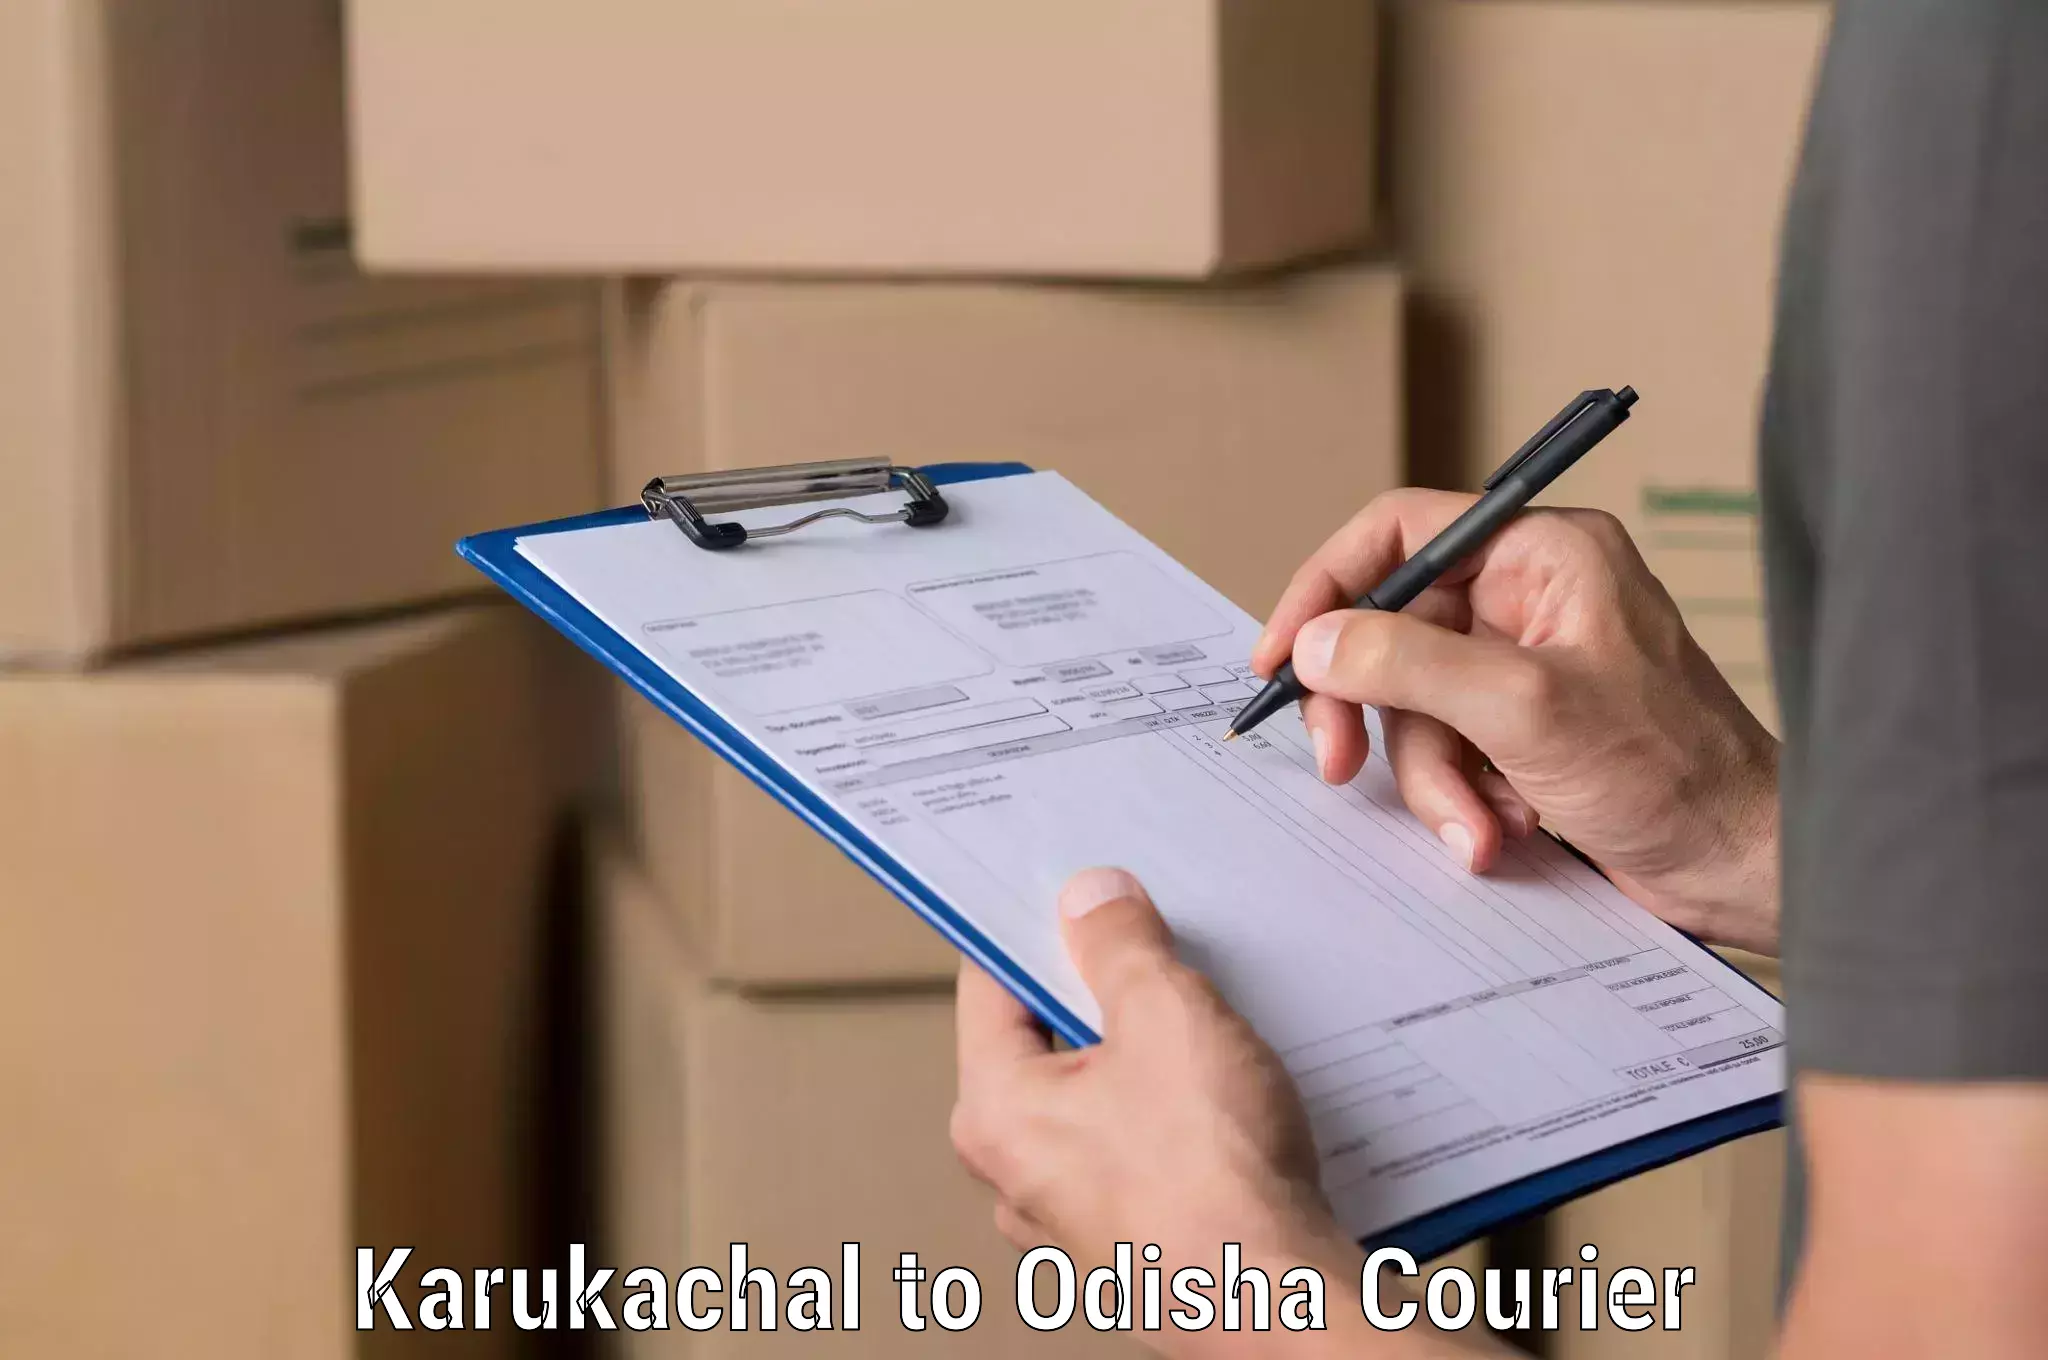 Urgent courier needs Karukachal to Tikiri